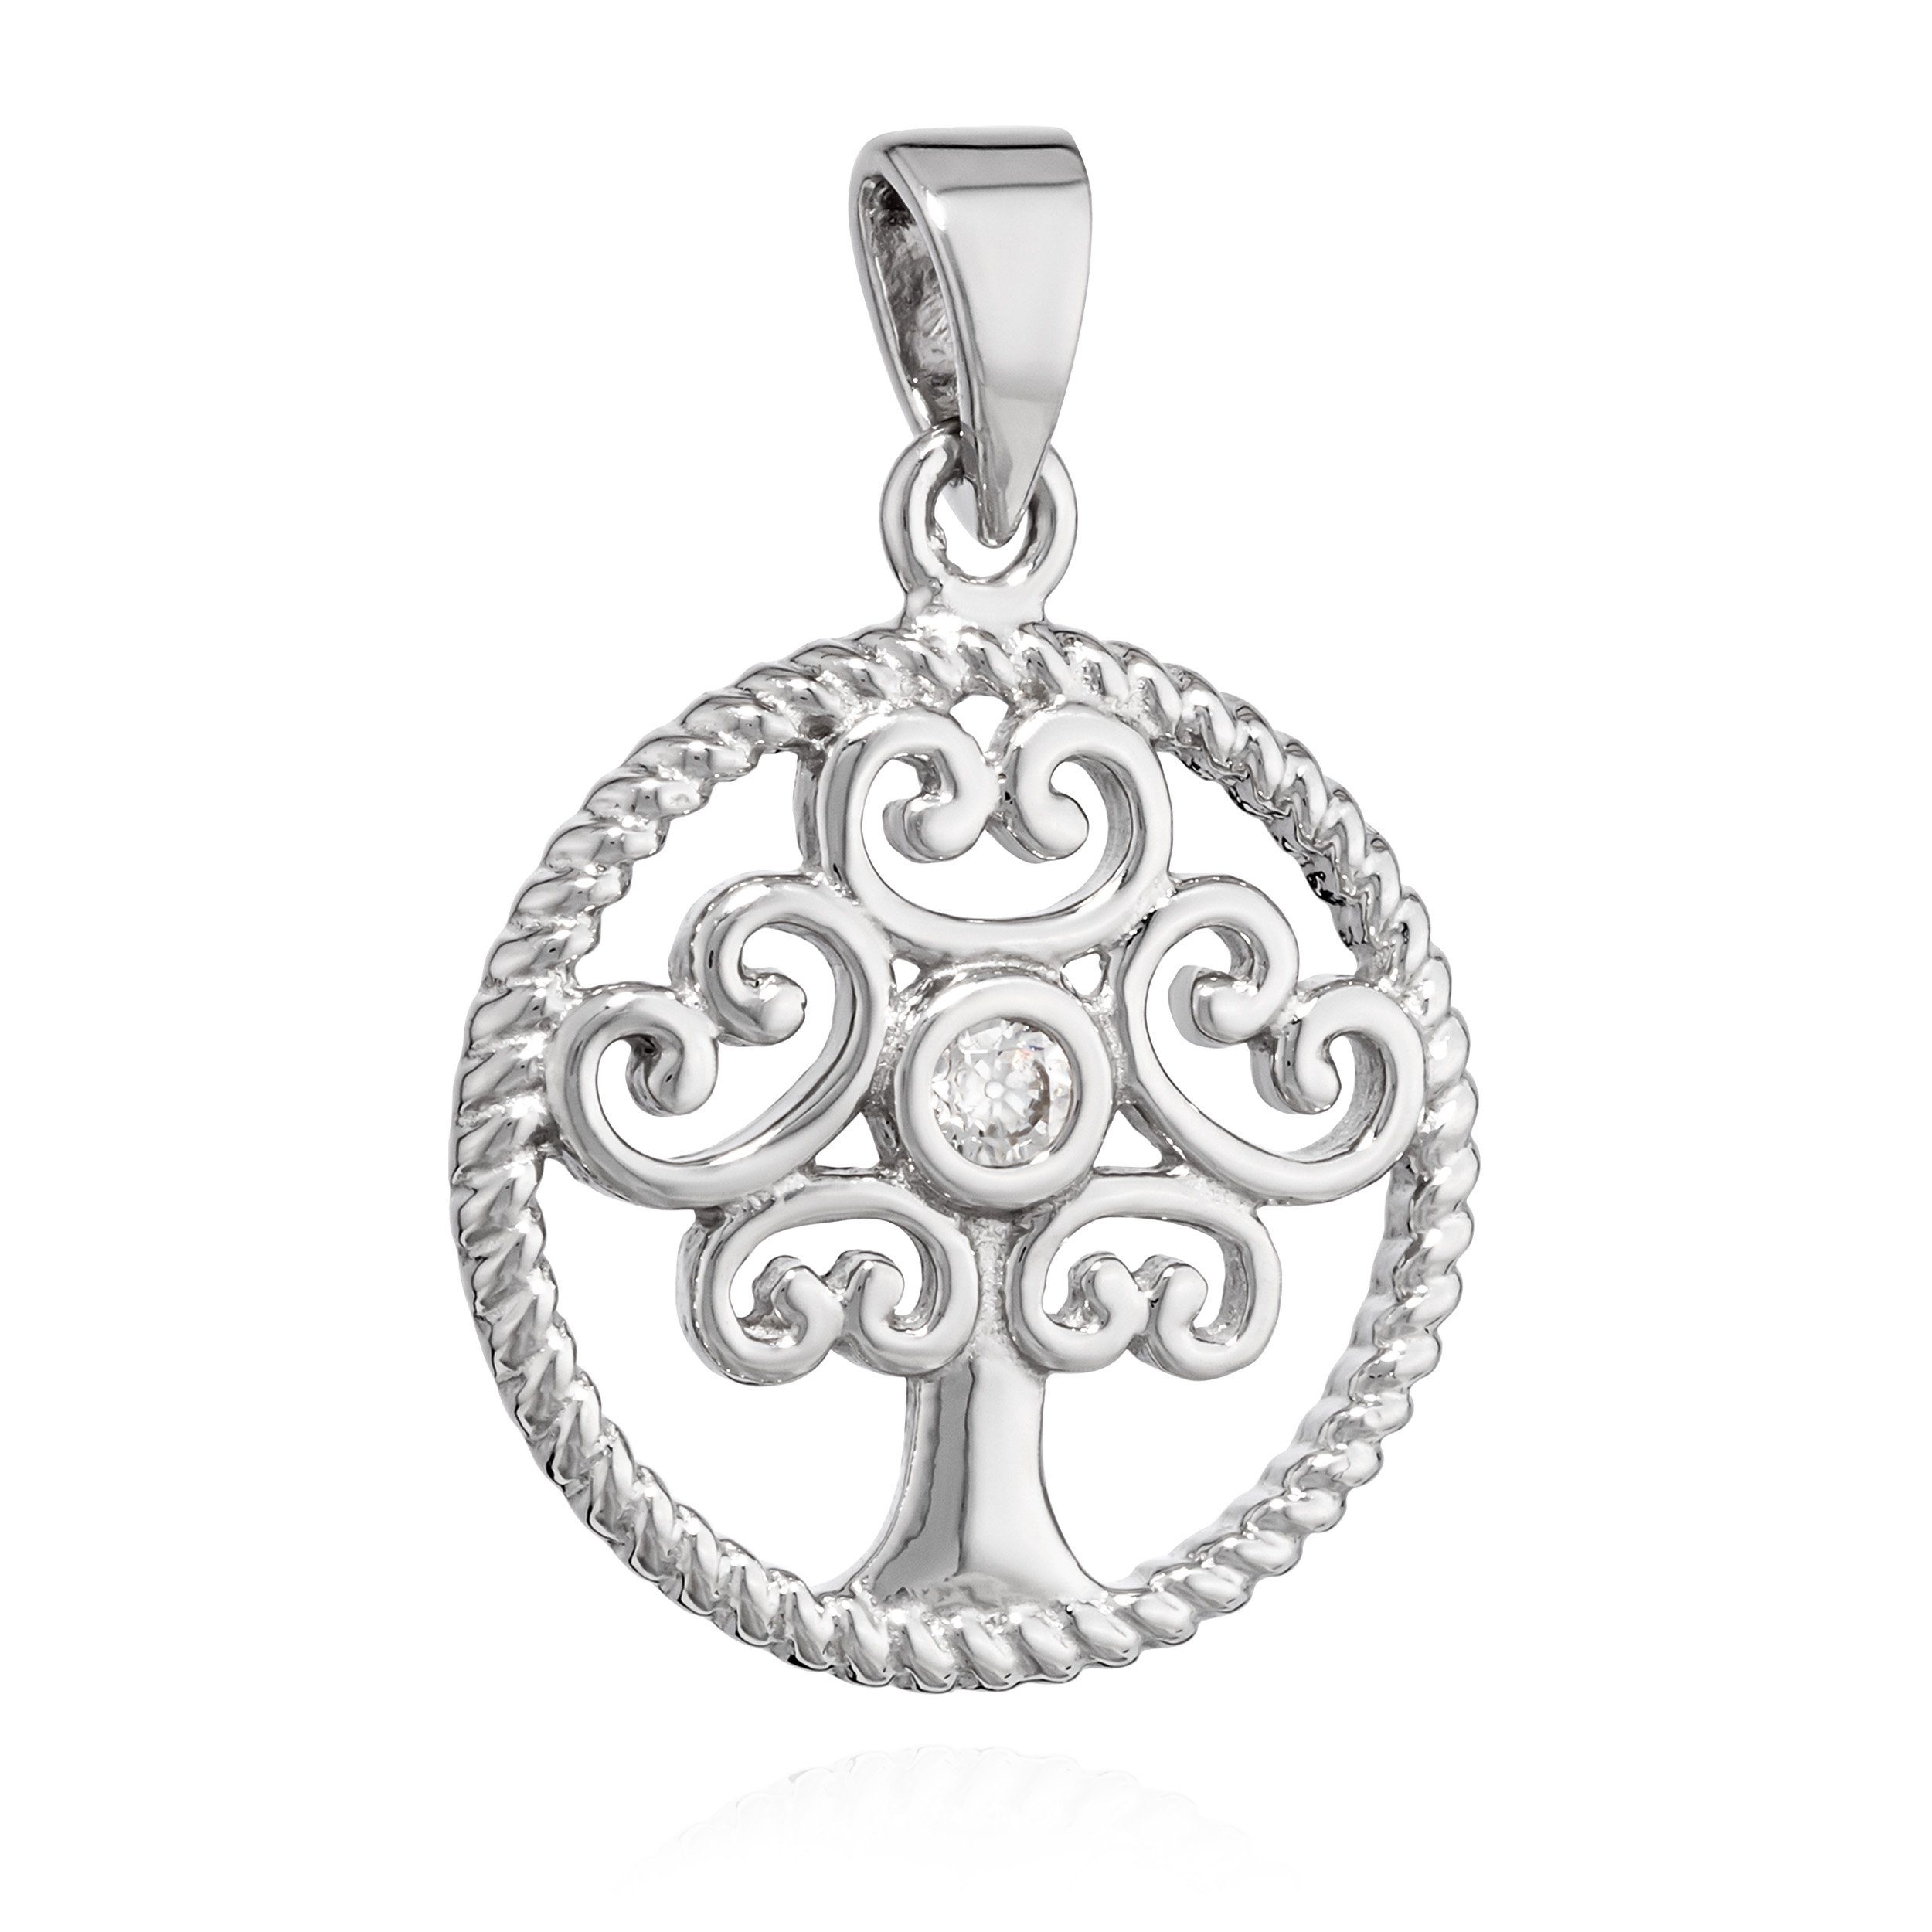 NKlaus Kettenanhänger 14,8mm Kettenanhänger Baum des Lebens 925 Silber Zirkonia weiß Kristal